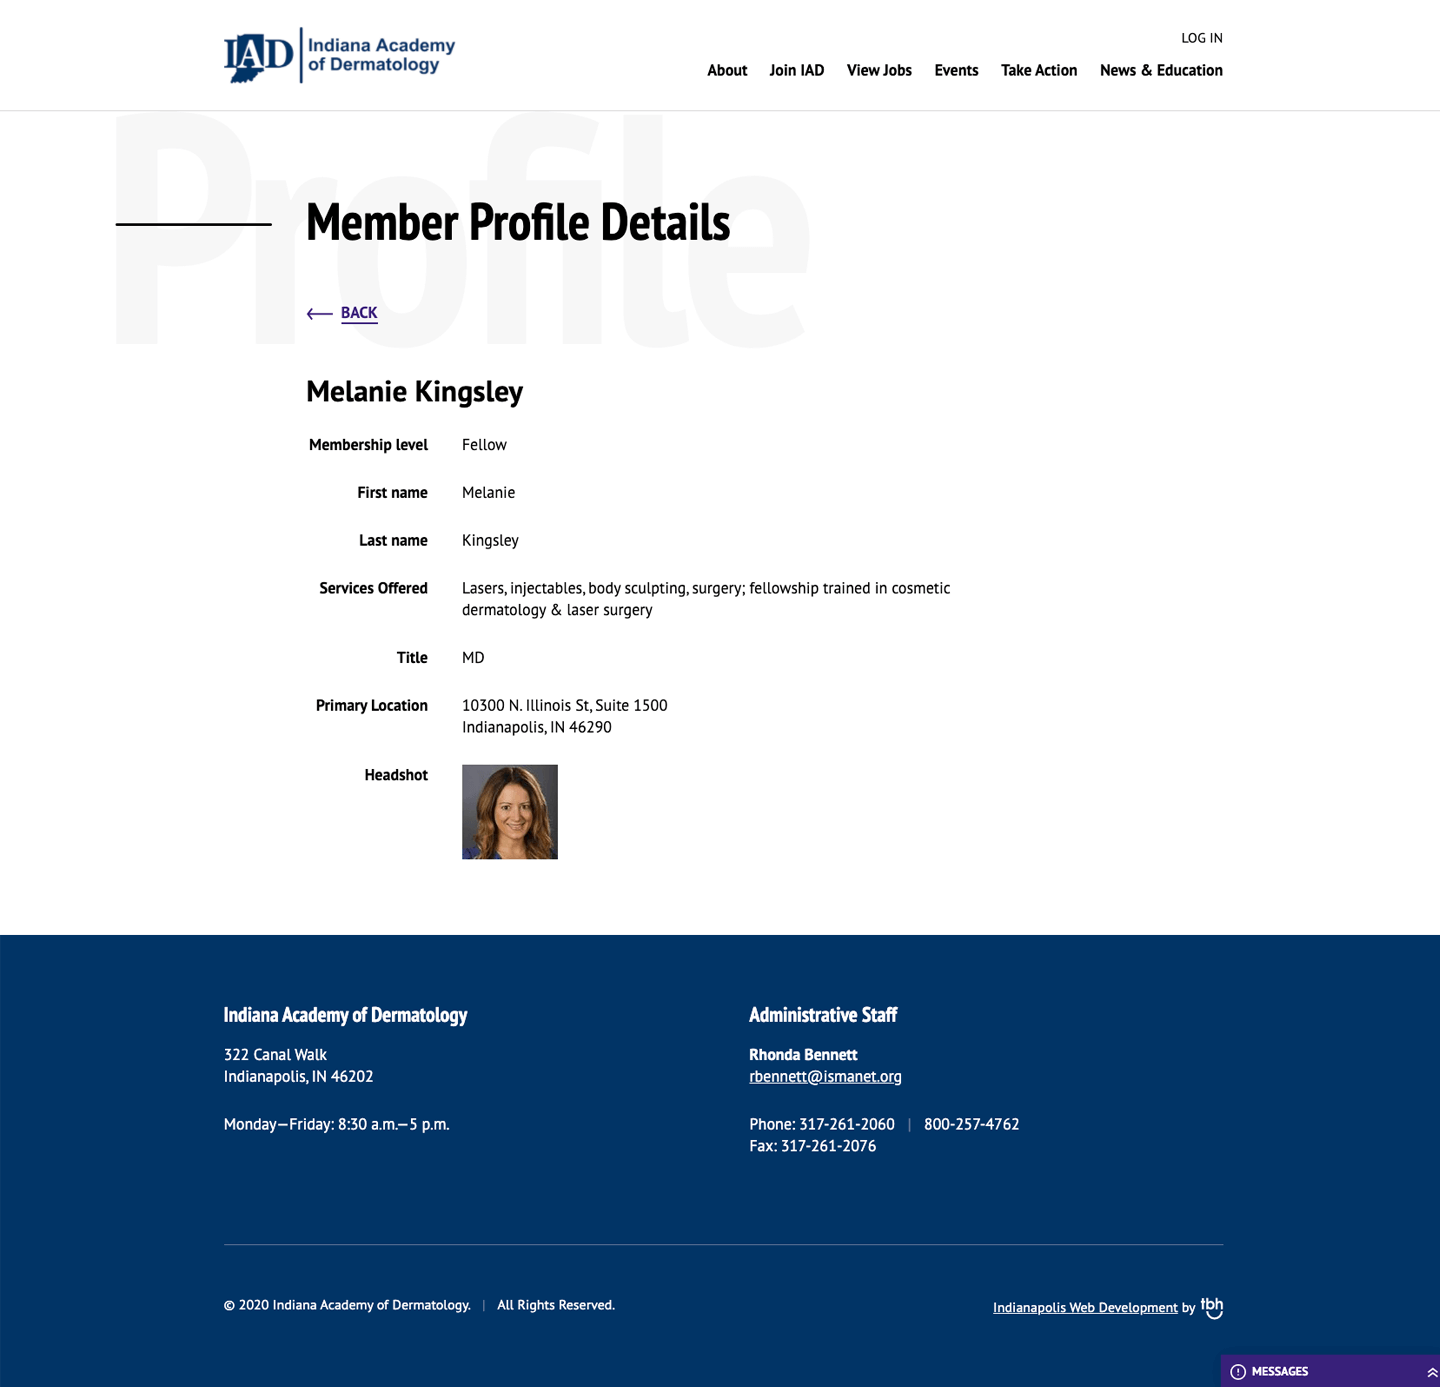 Member Profile Detail web page